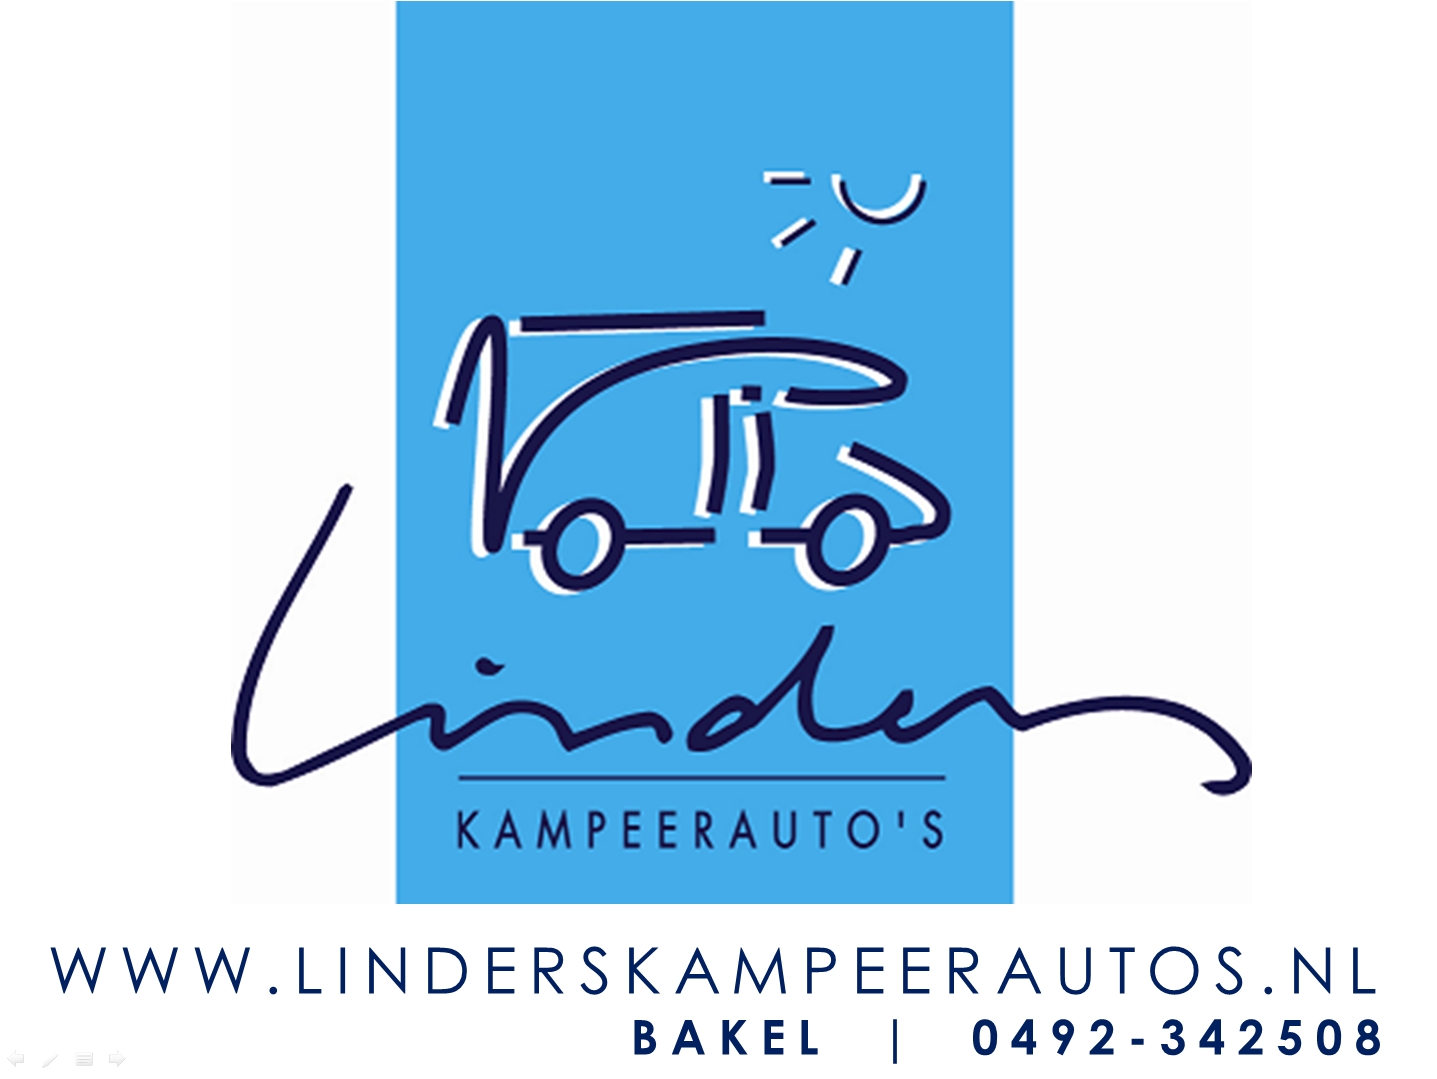 Linders Kampeerauto’s